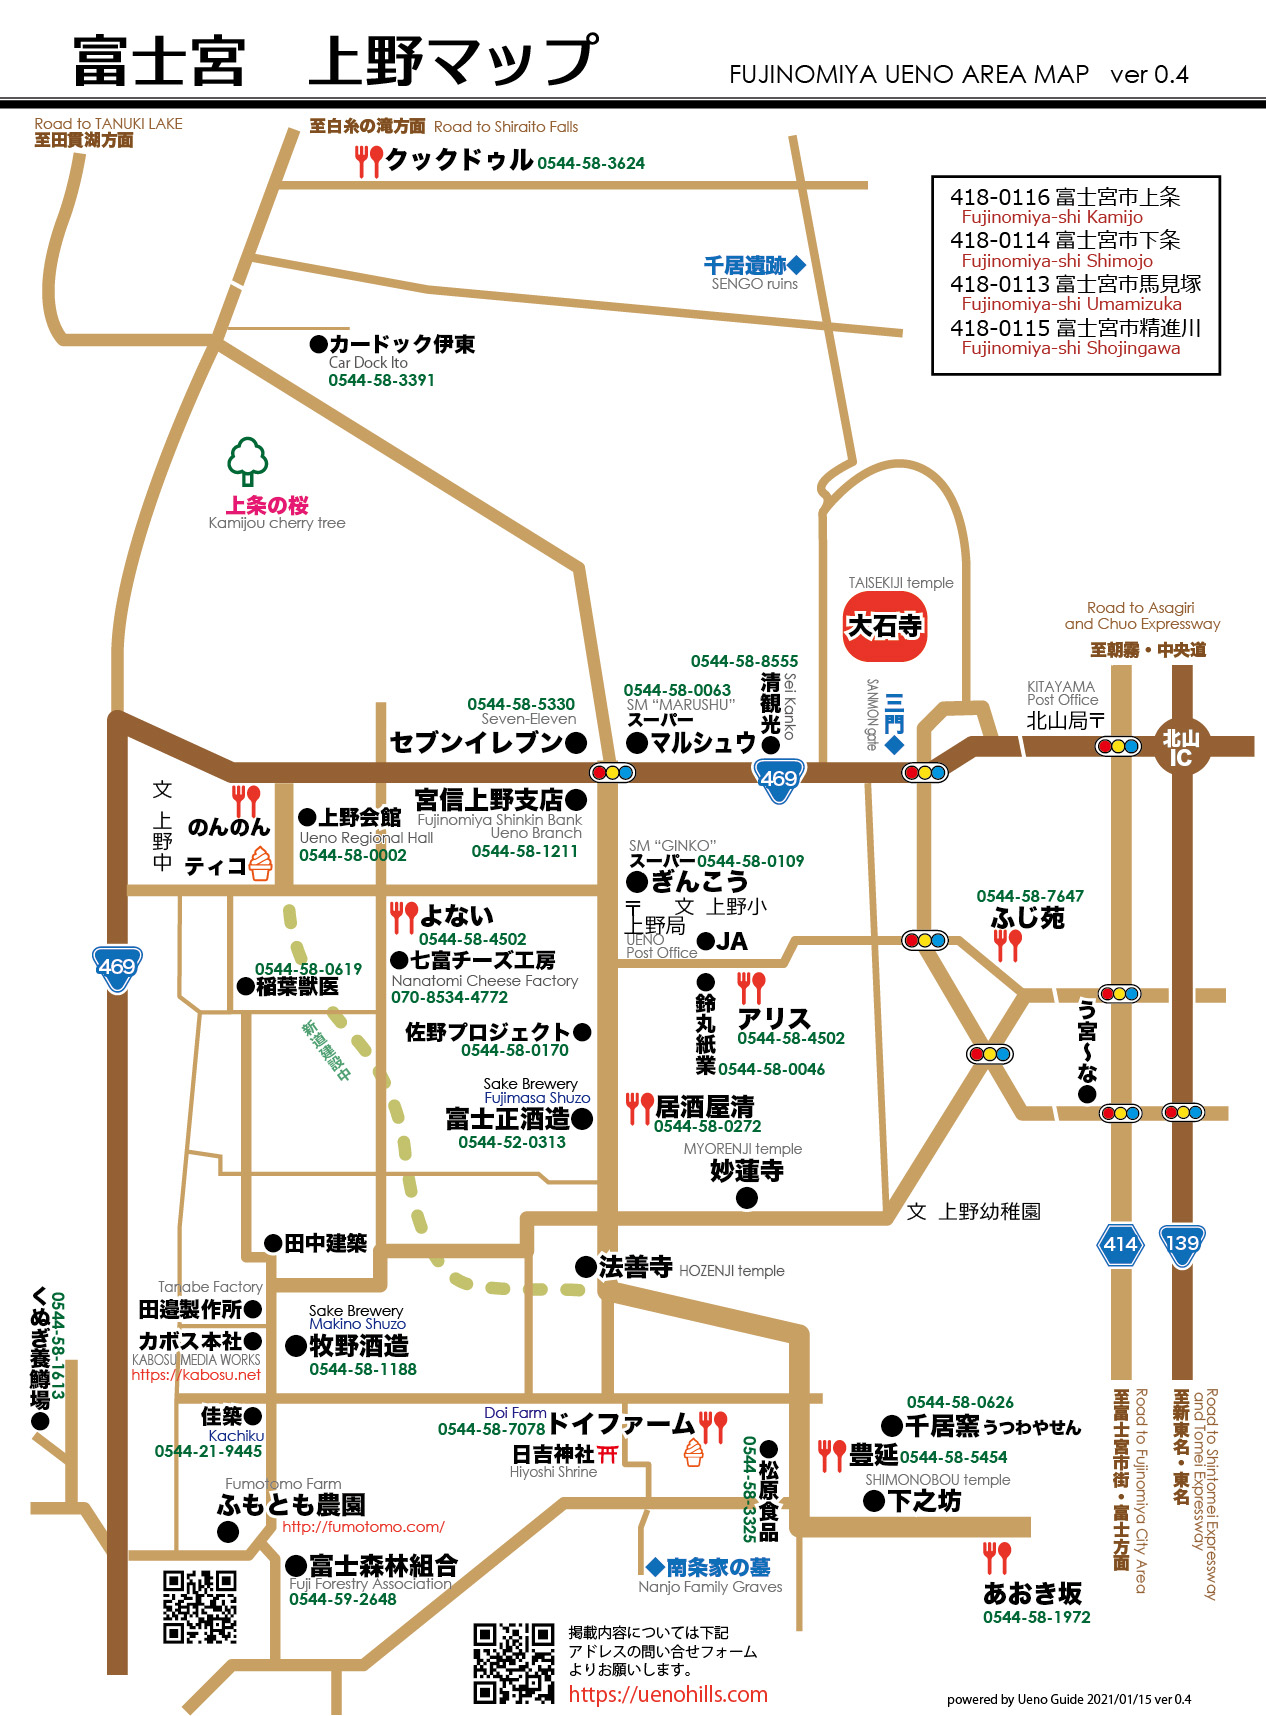 富士宮 上野 簡易地図 | 上野ガイド